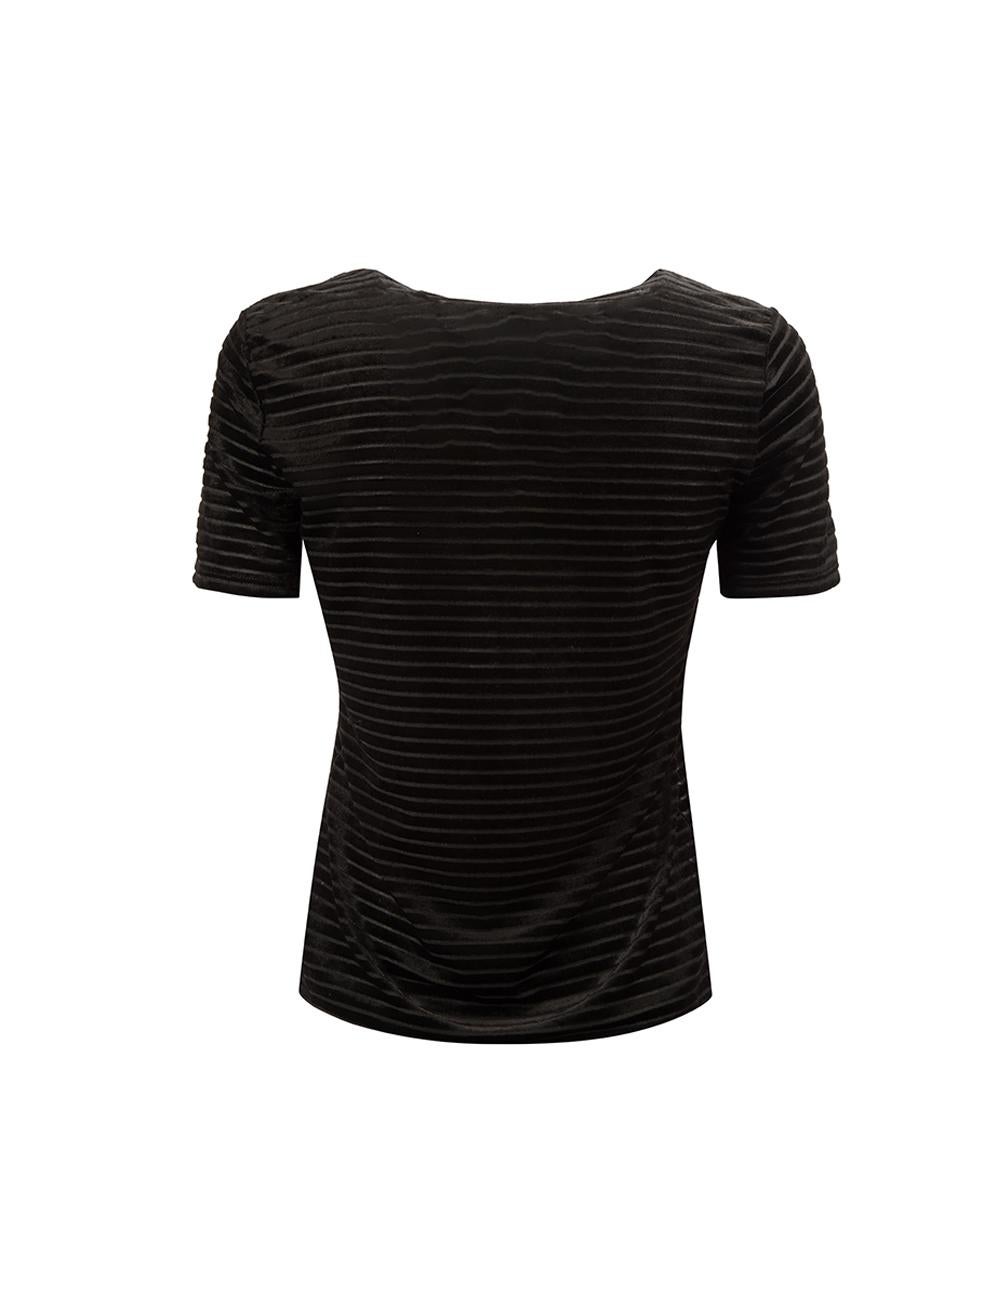 Armani Collezioni Black Velvet Striped T-Shirt Size S In Good Condition In London, GB